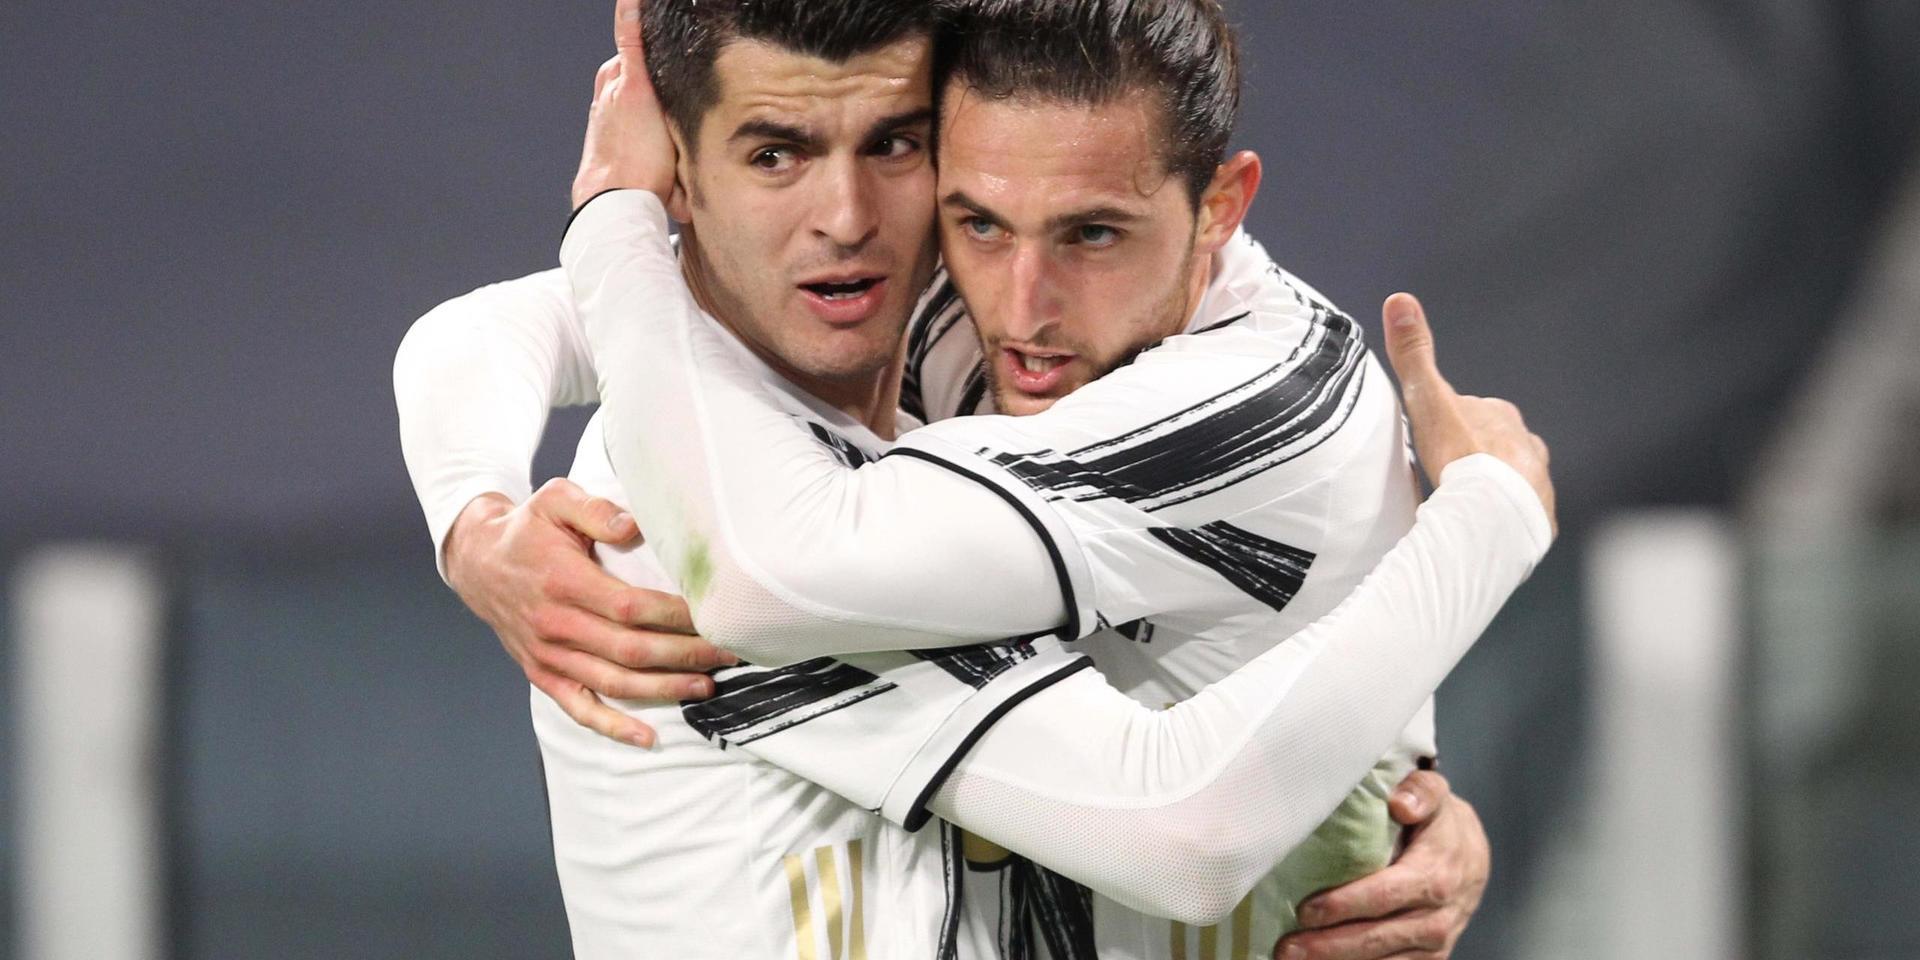 Två målskyttar firar. Adrien Rabiot, till höger, kramar om Alvaro Morata efter ett av målen i segern över Lazio.